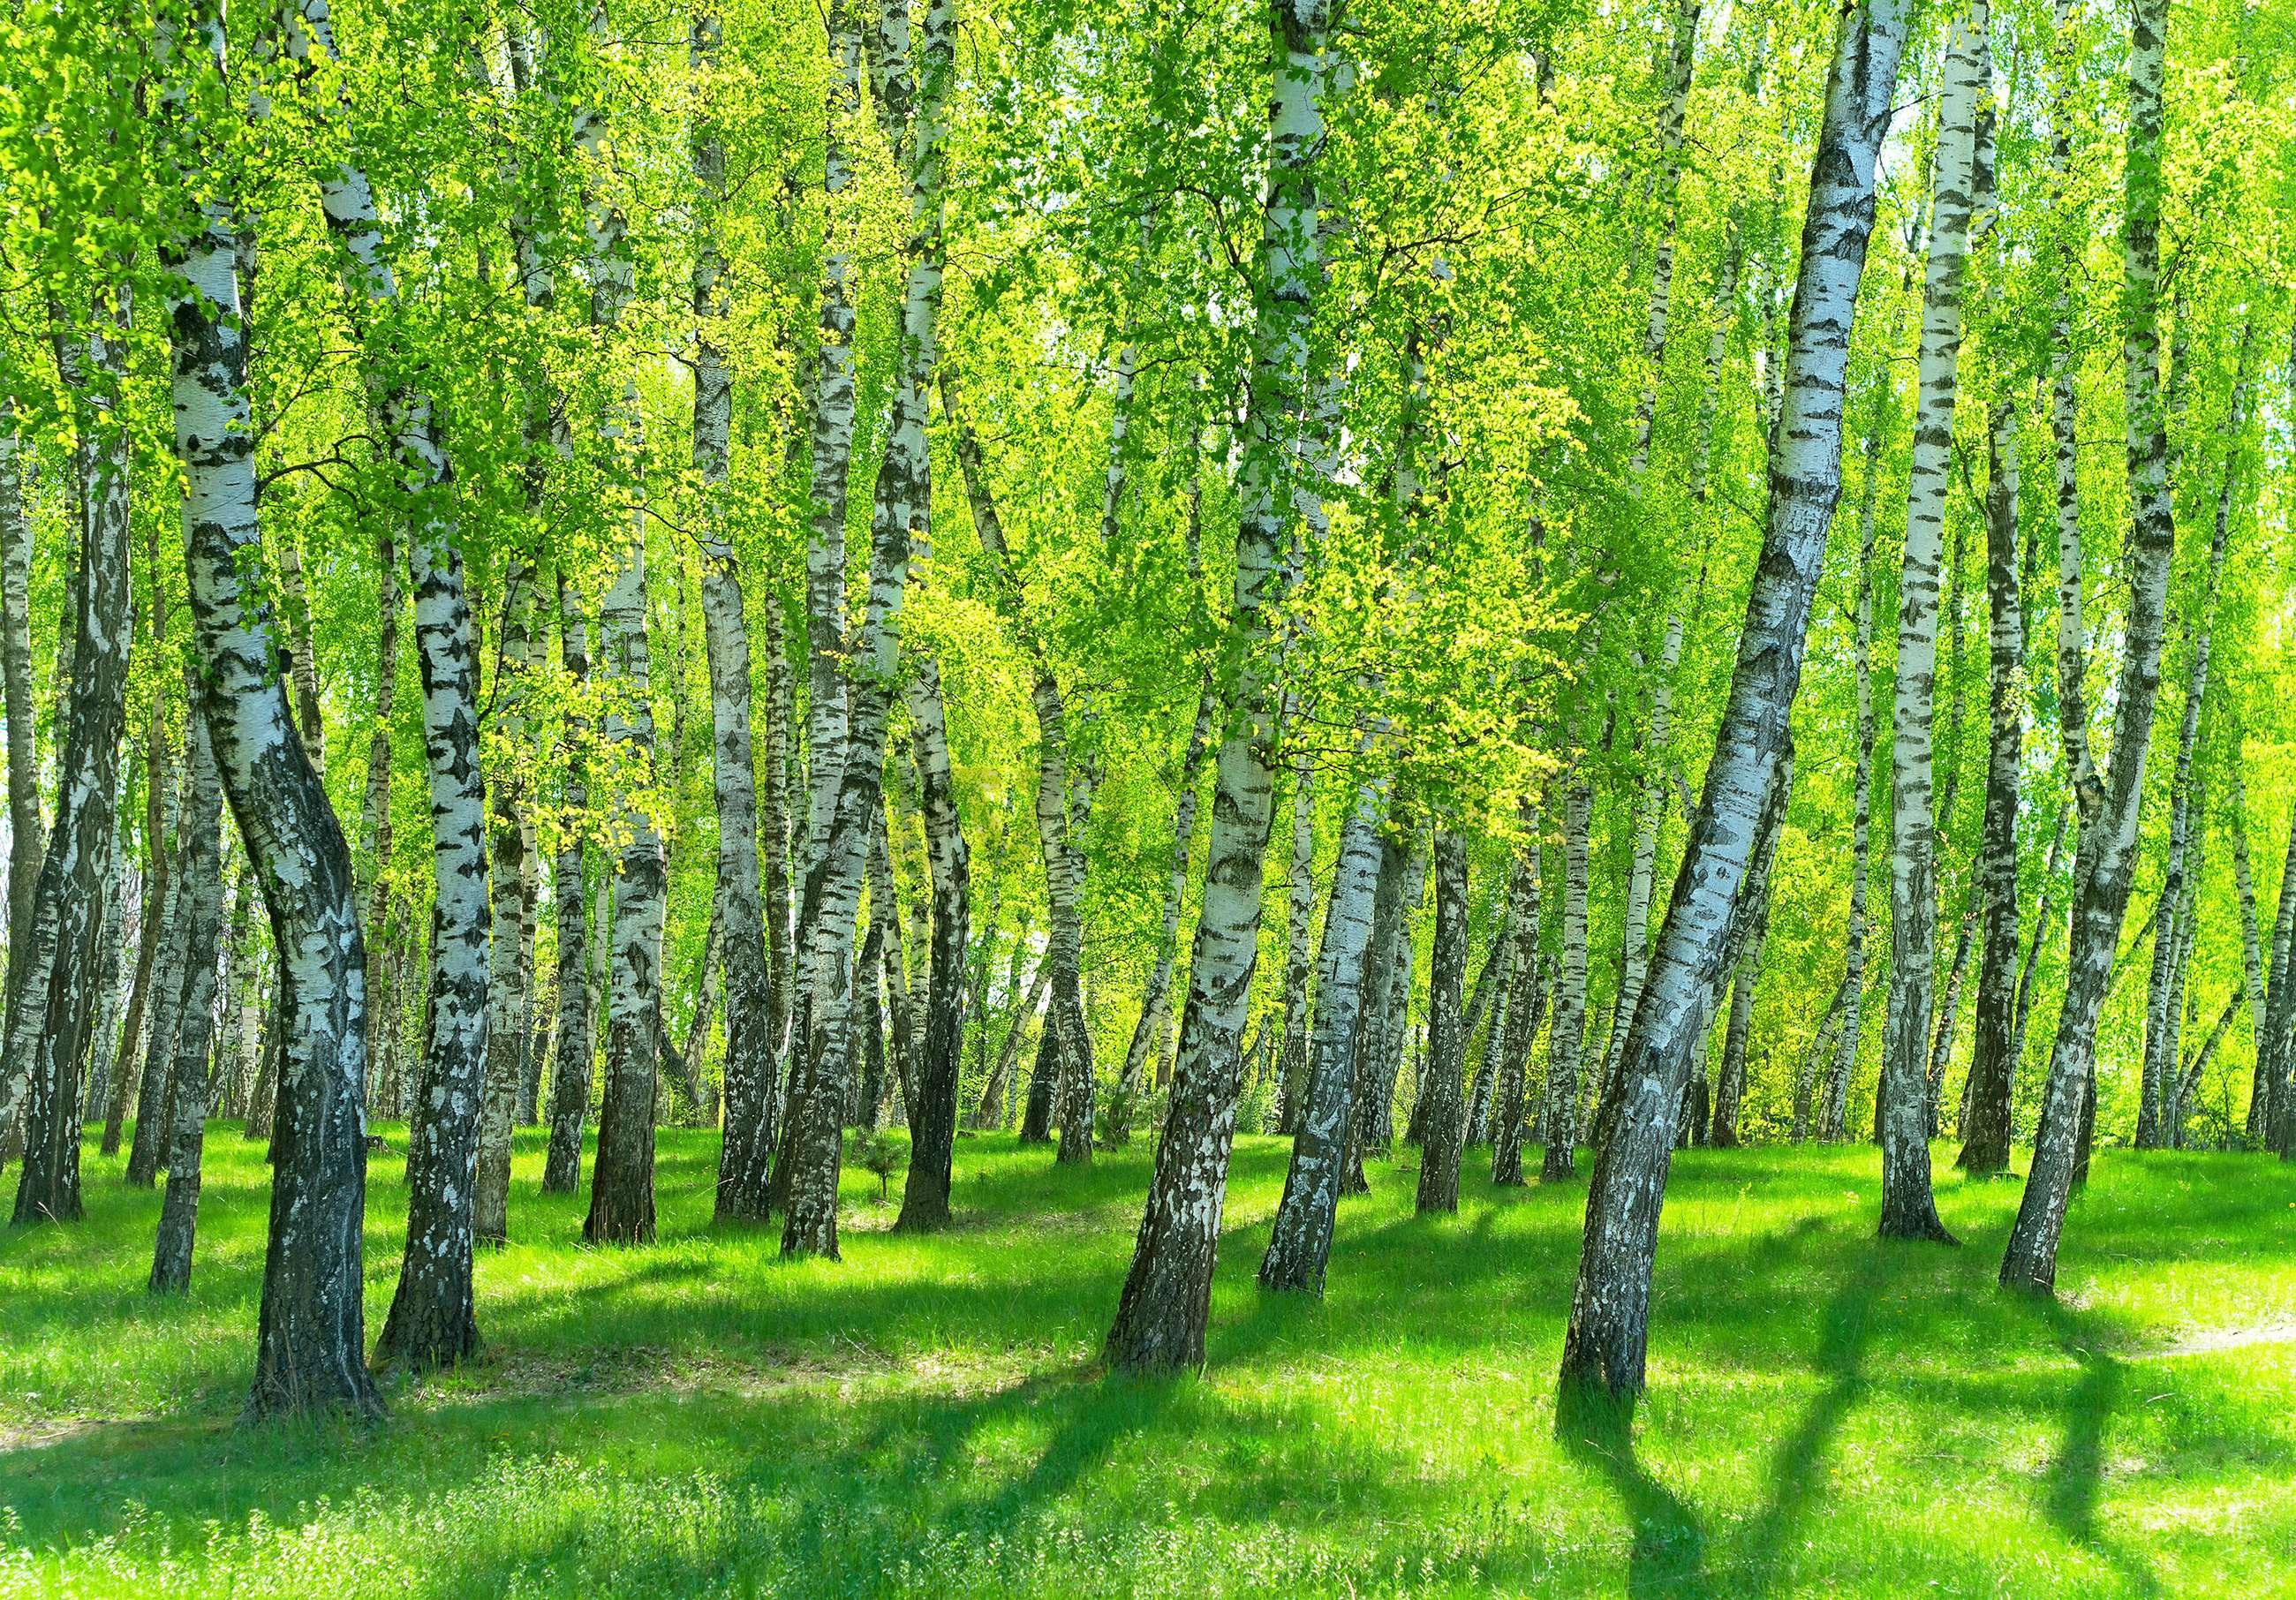 Vlies foto tapeta: Šuma breze - 152,5x104 cm